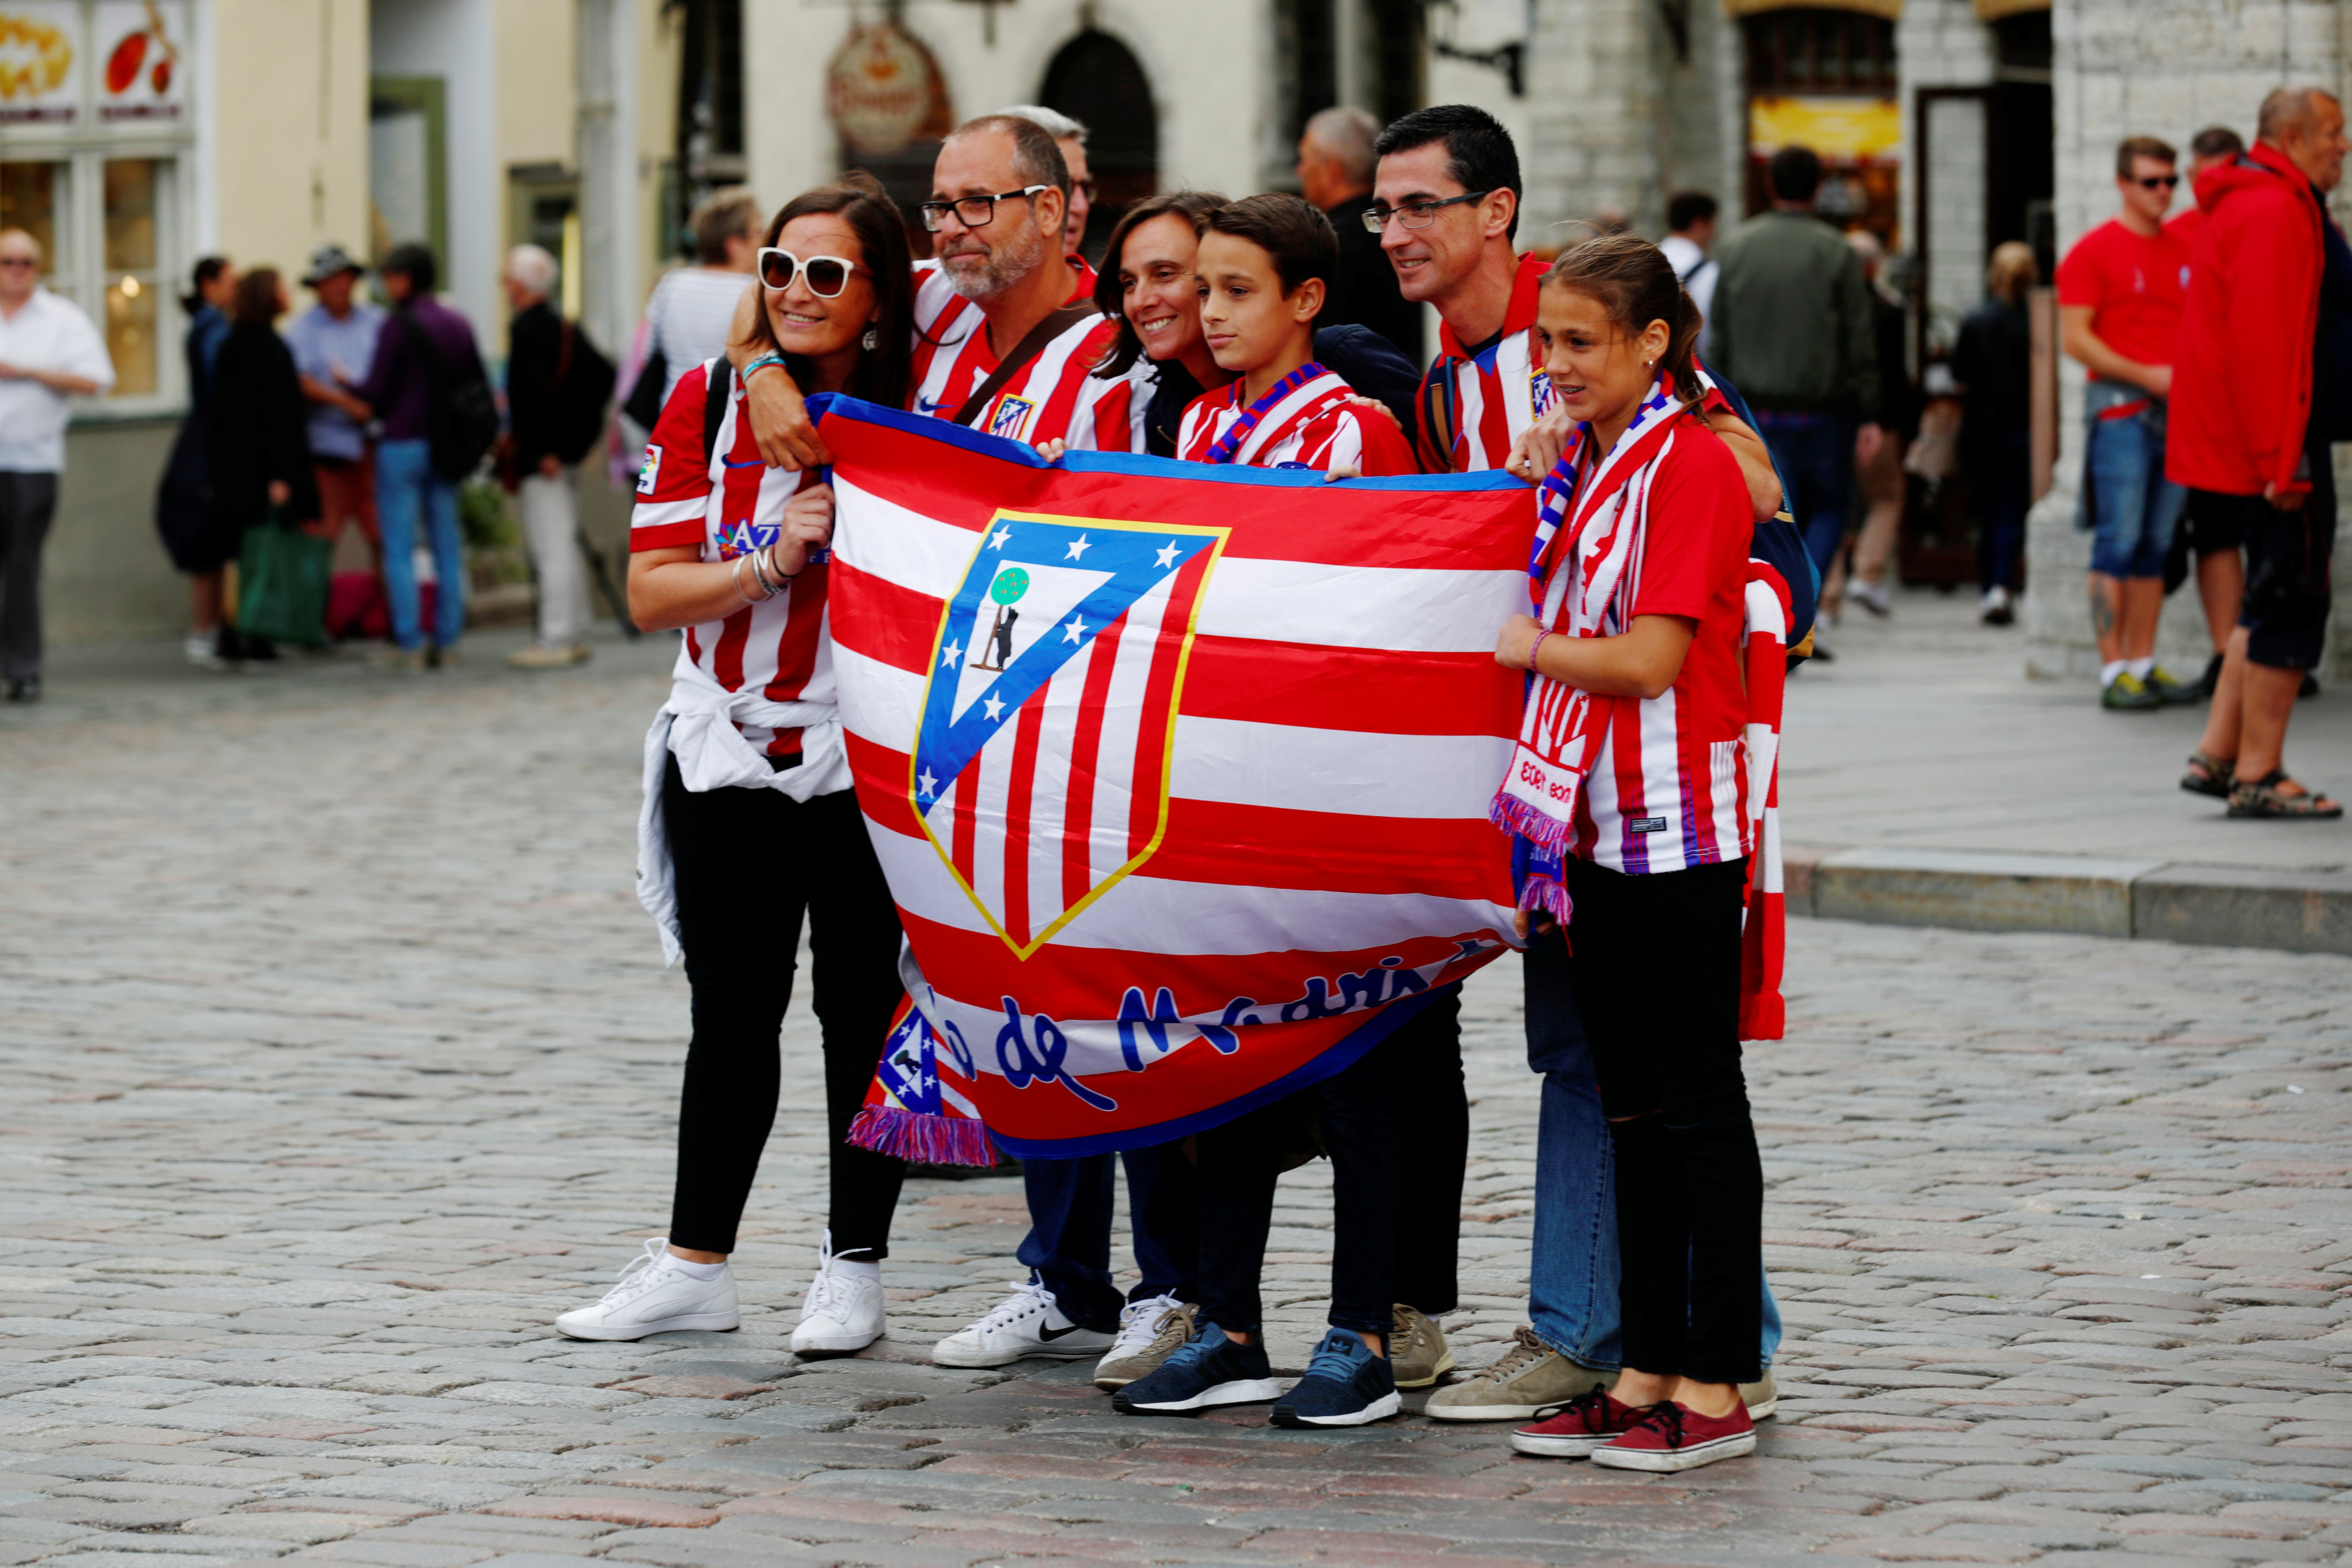 مشجعو أتليتيكو مدريد يحملون علم فريقهم 